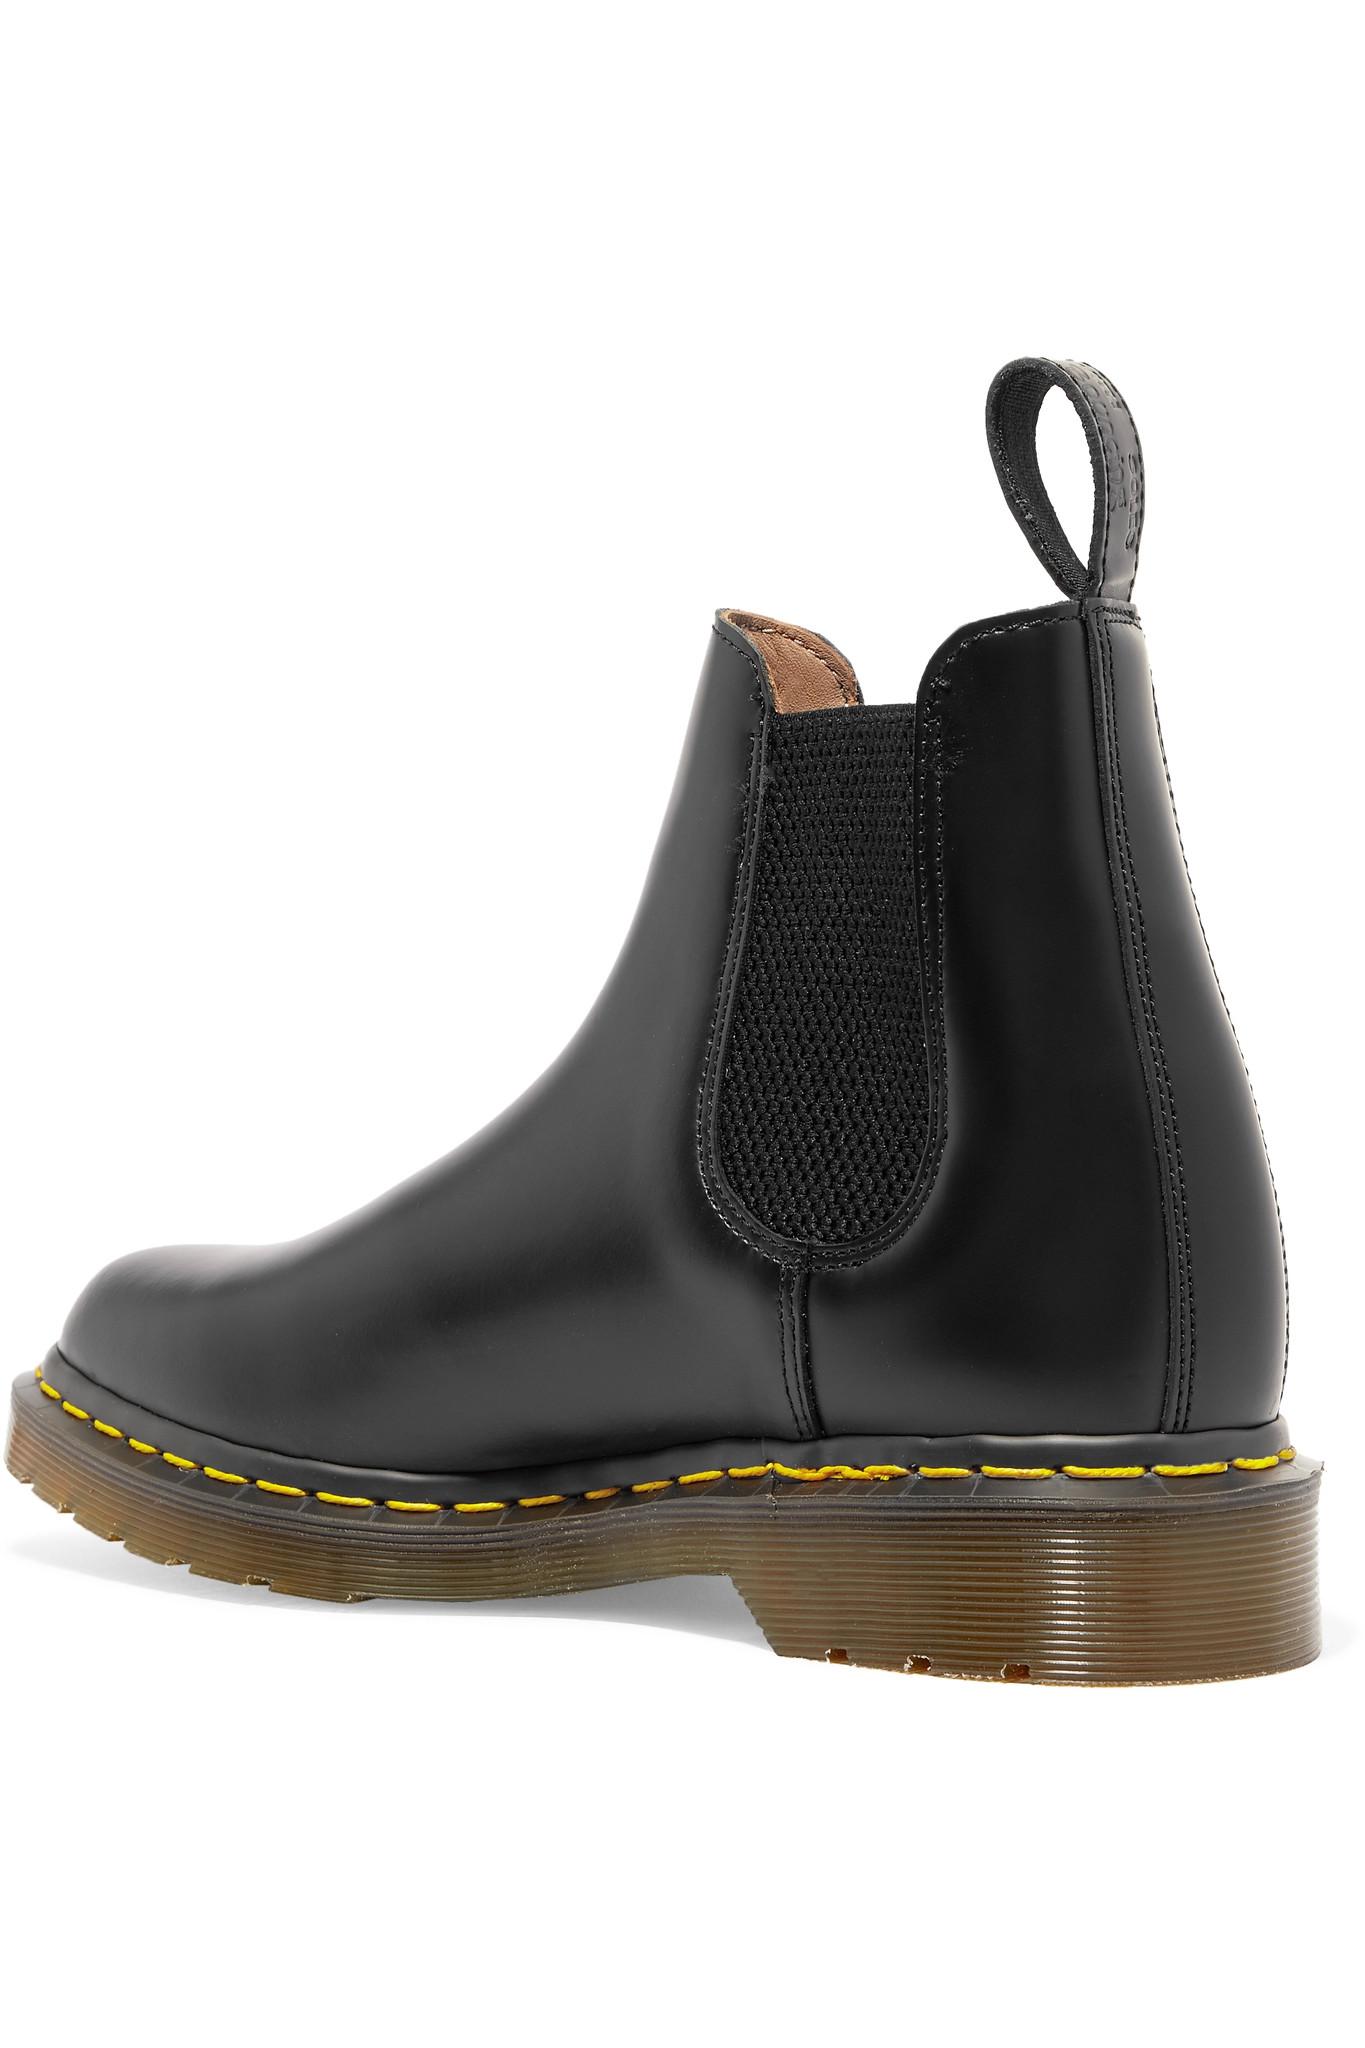 Comme des Garçons + Dr Martens Leather Chelsea Boots in Black | Lyst